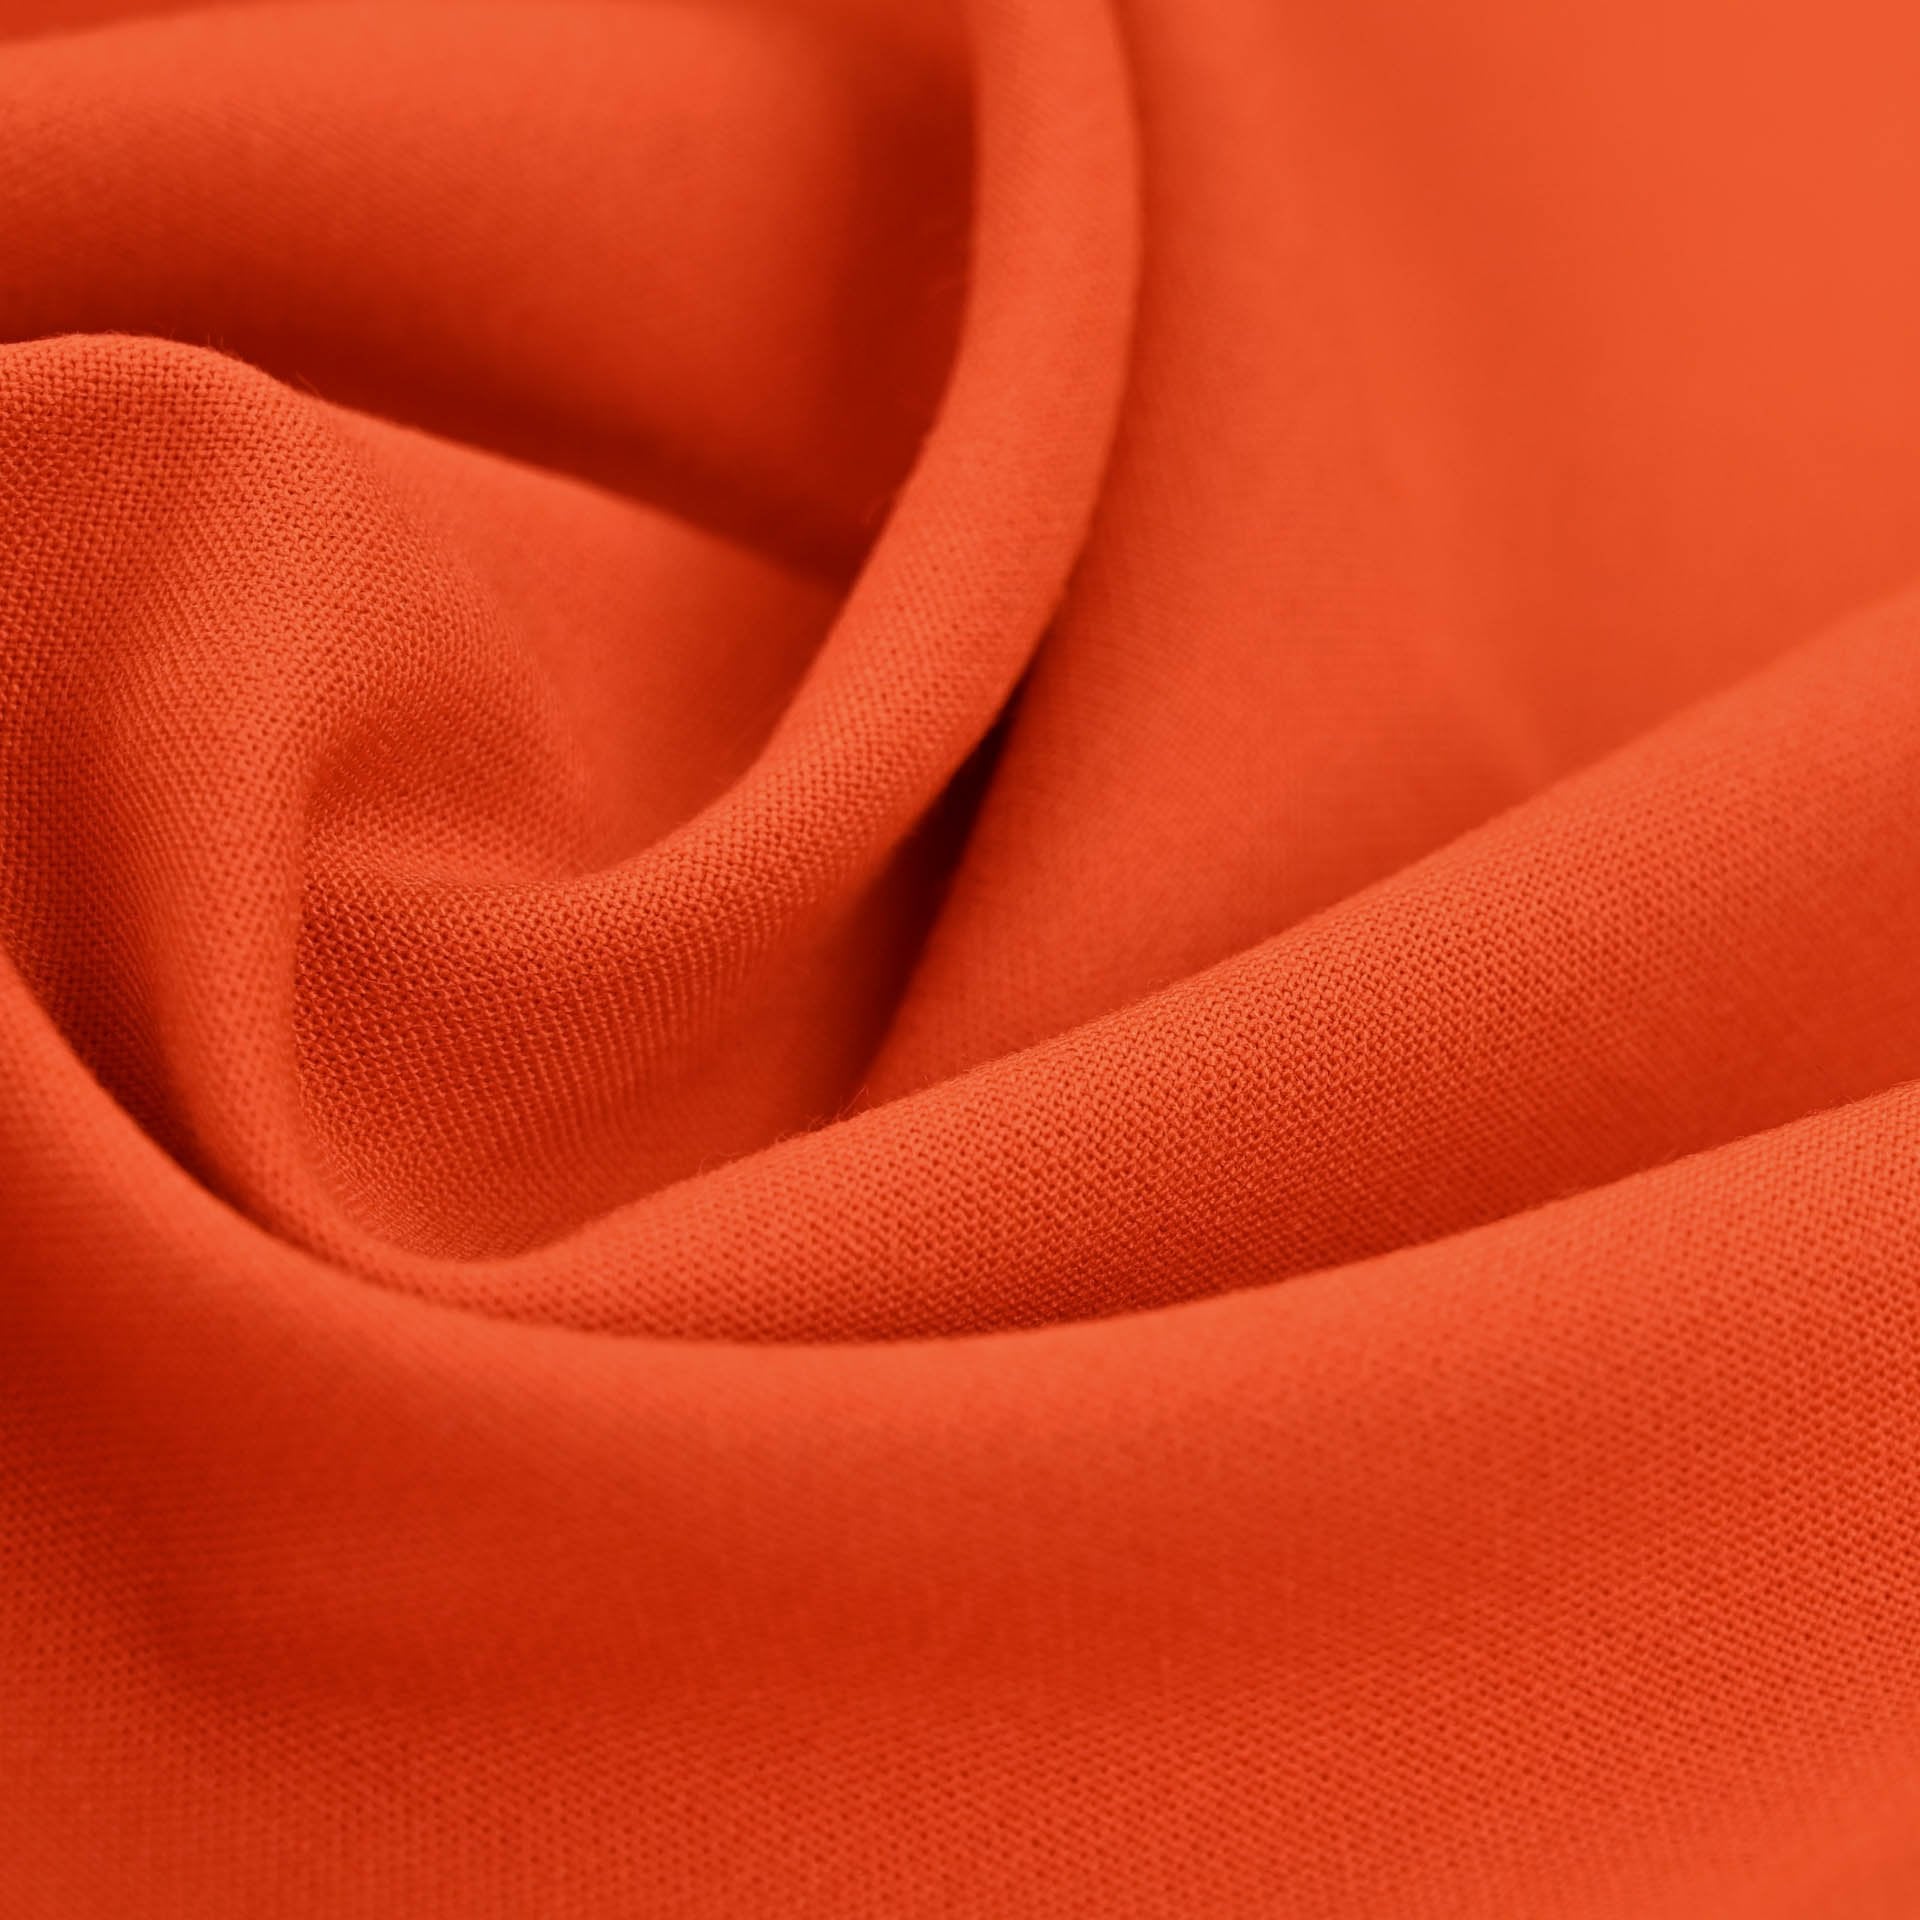 Orange Red Canvas Fabric 96674